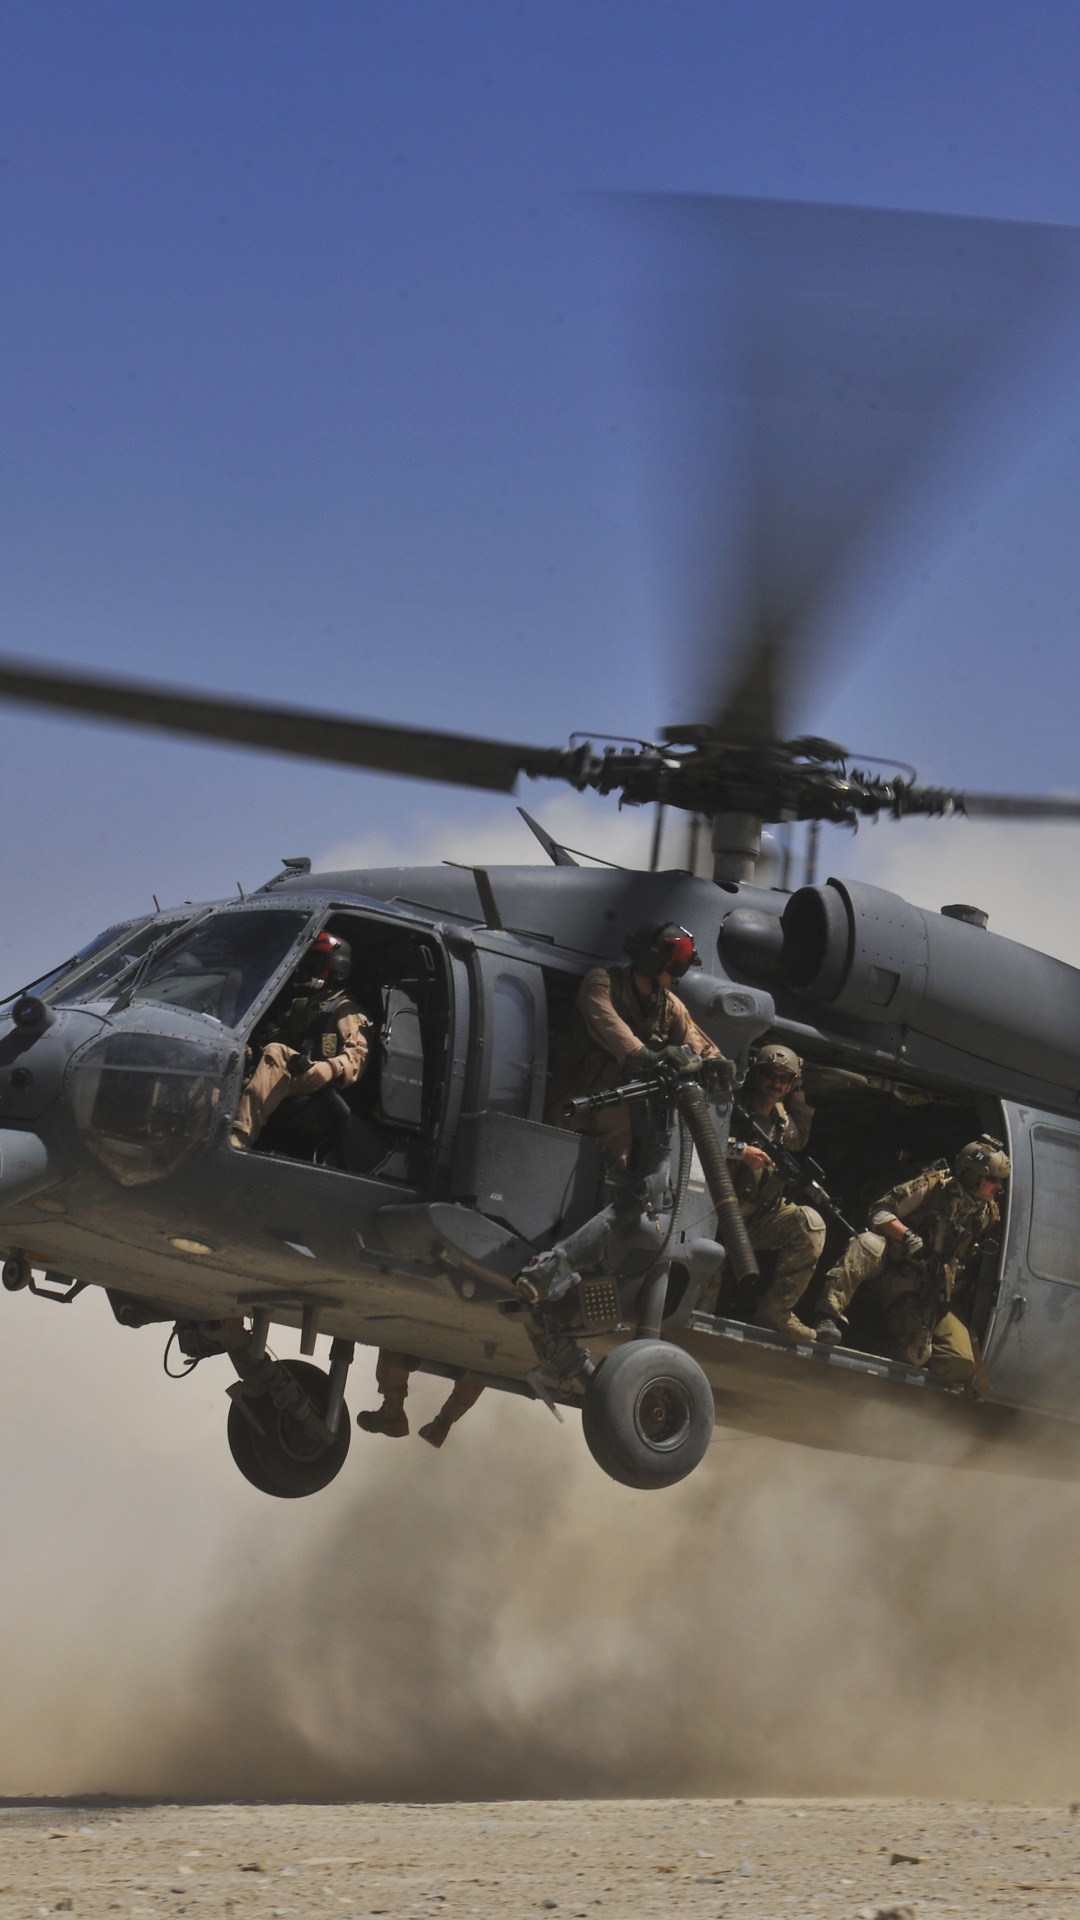 Helicóptero Negro en el Aire Durante el Día. Wallpaper in 1080x1920 Resolution